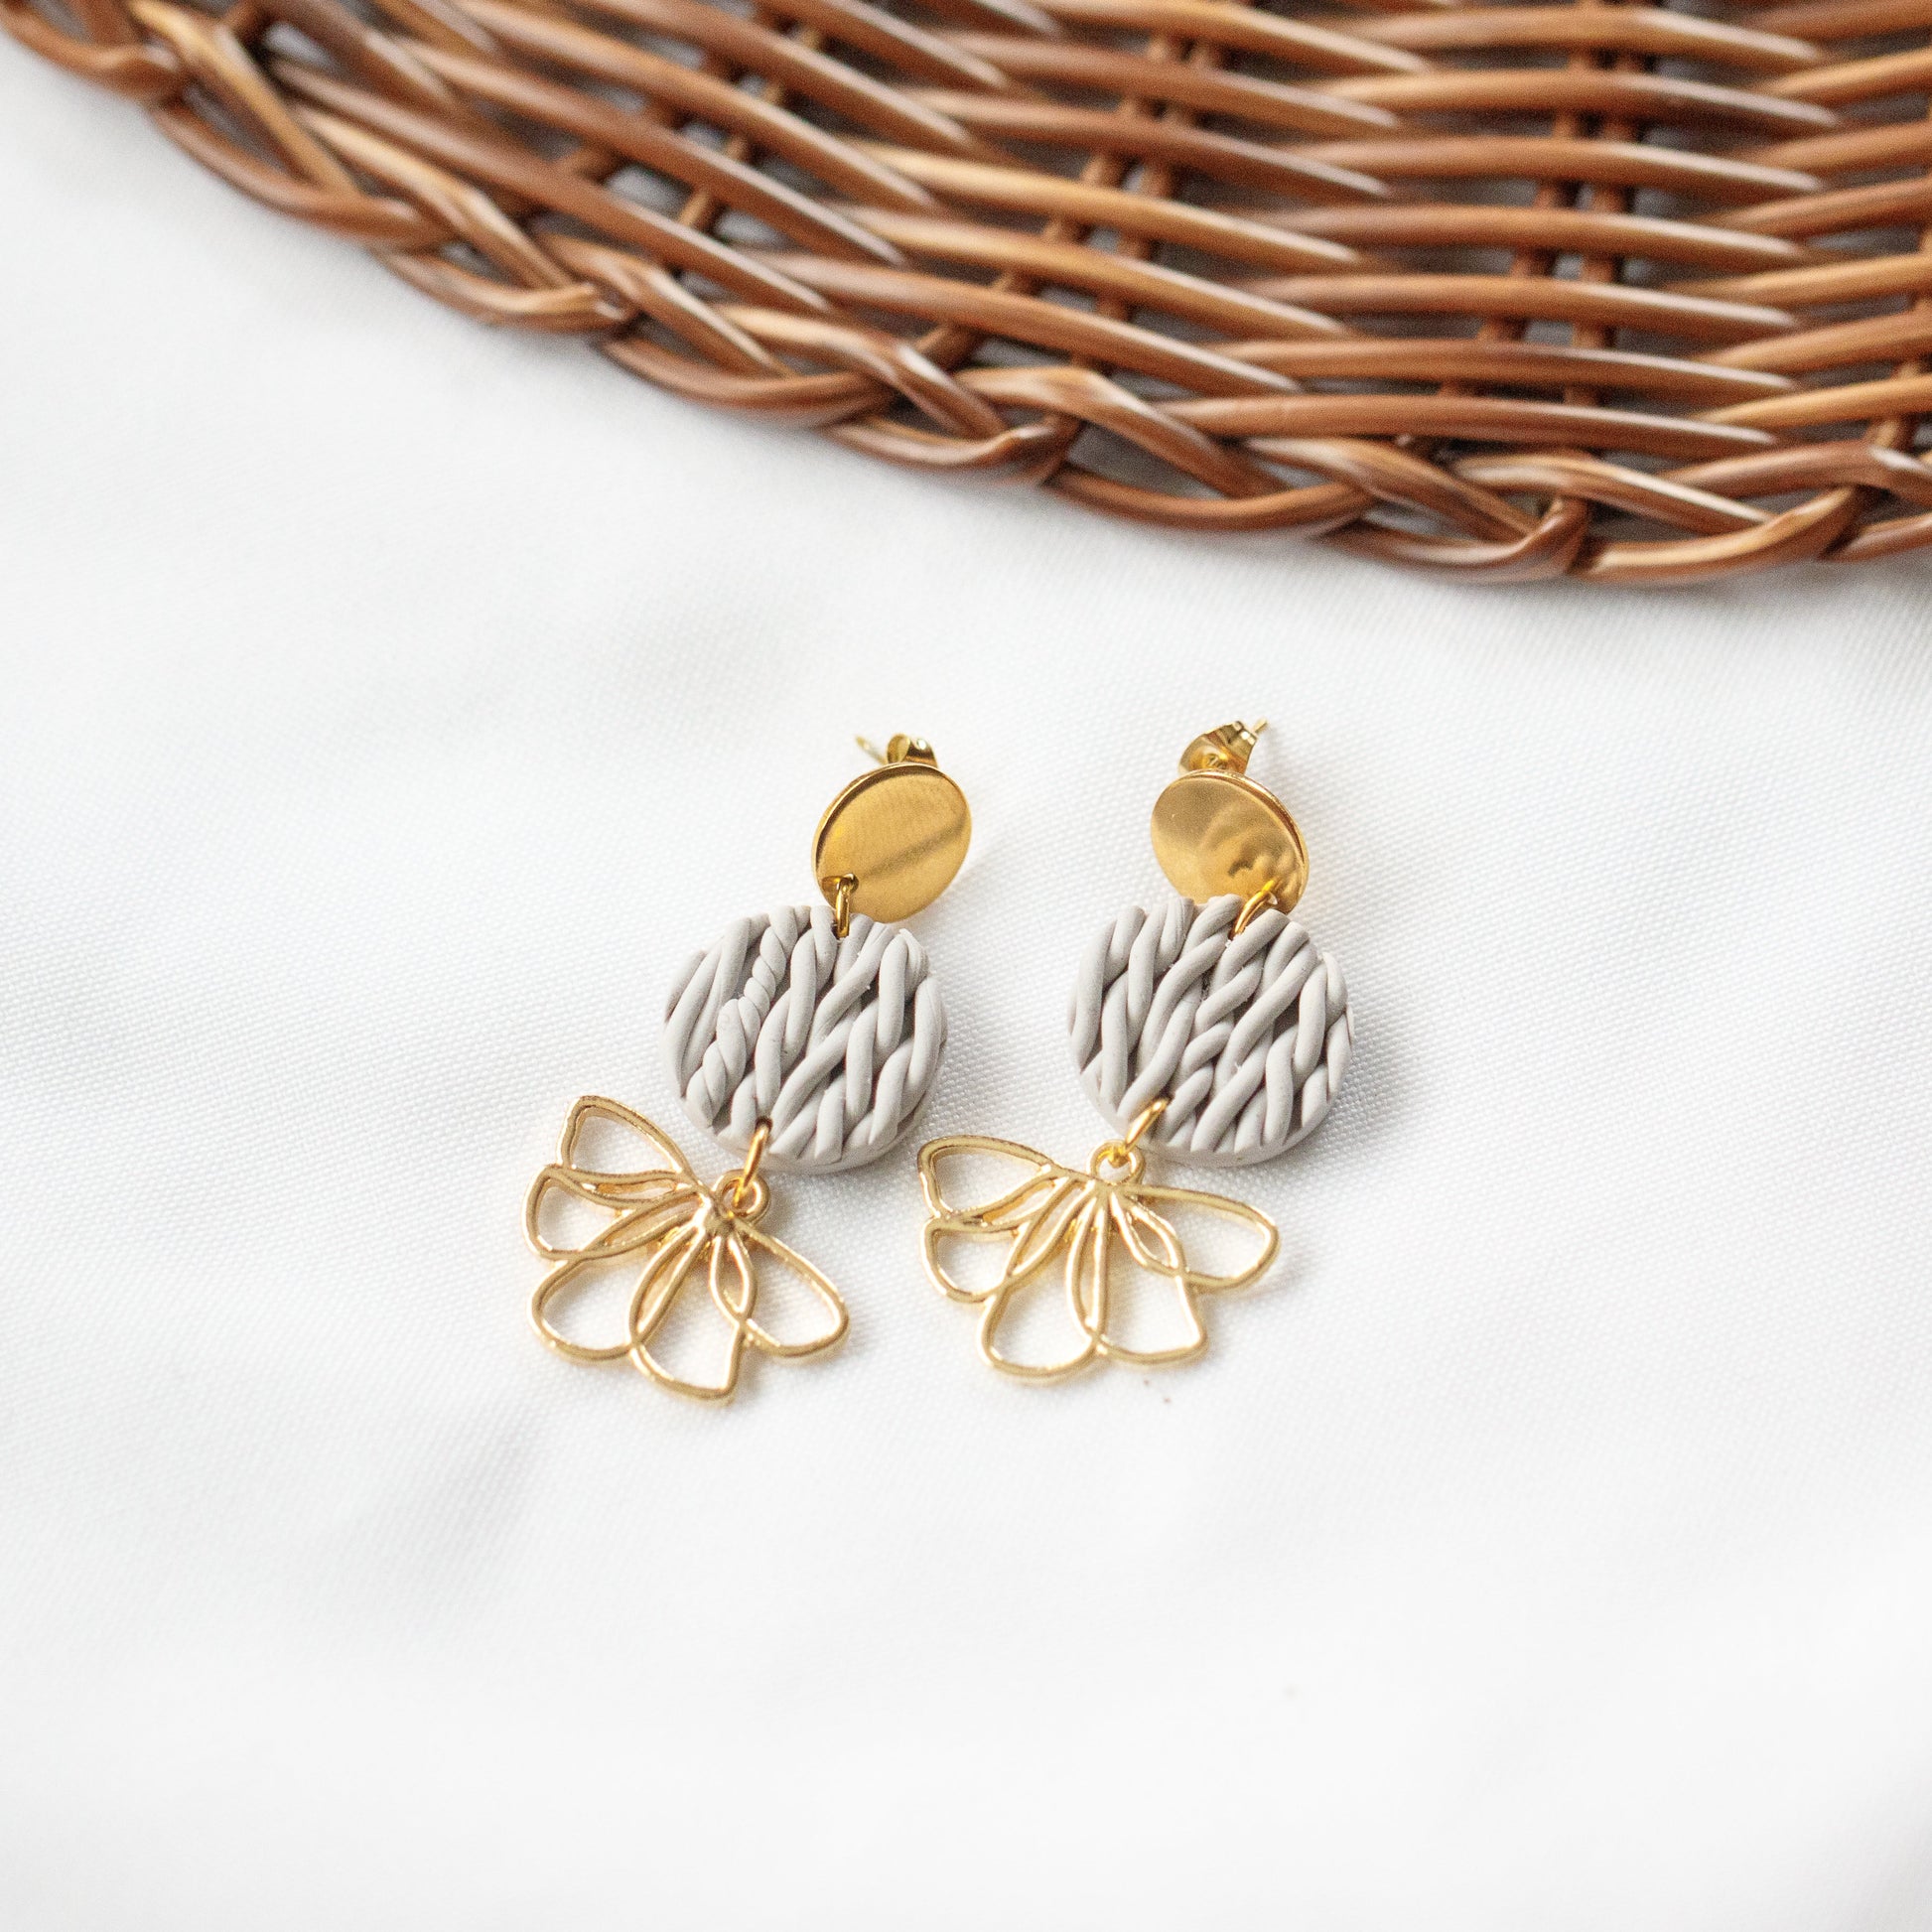 Grey Knit Gold Floral Charm Earrings - Claymore NZ-Earrings